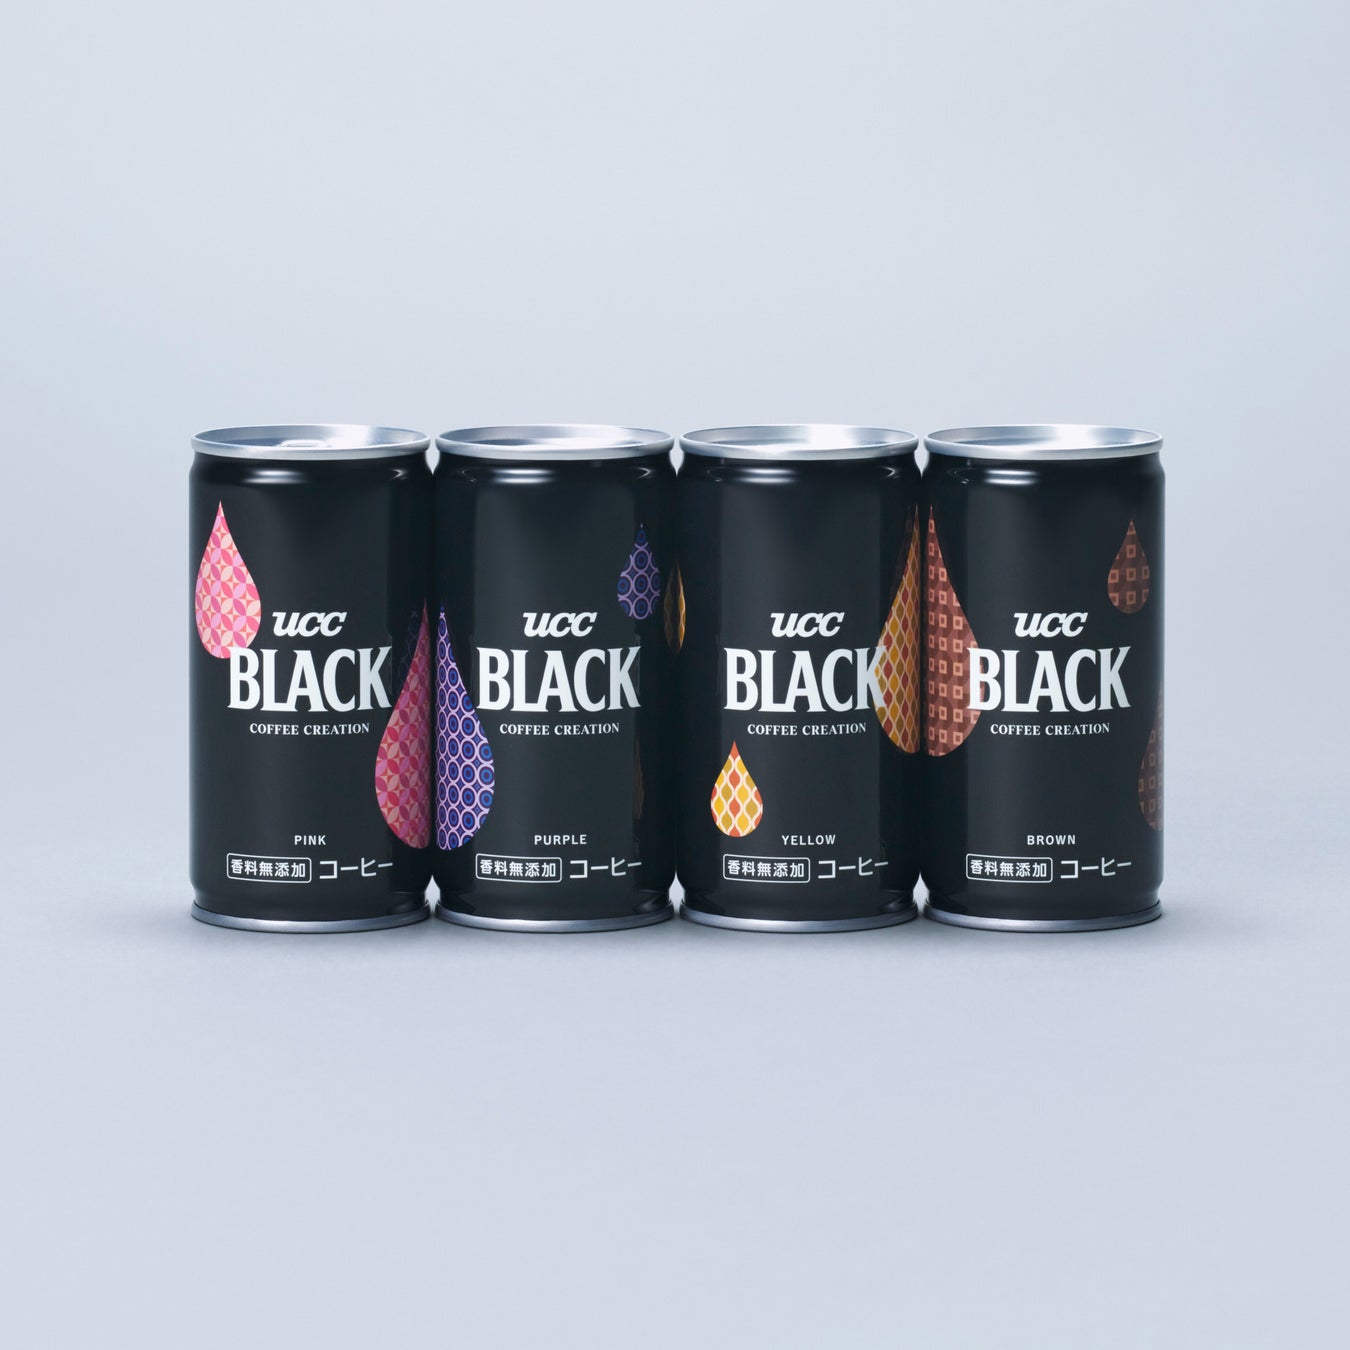 UCCの「こだわりの抽出」技術で実現した4つのプレミアムなBLACK「UCC BLACK無糖 COFFEE CREATION 缶185g 4種アソート」を数量限定で販売開始